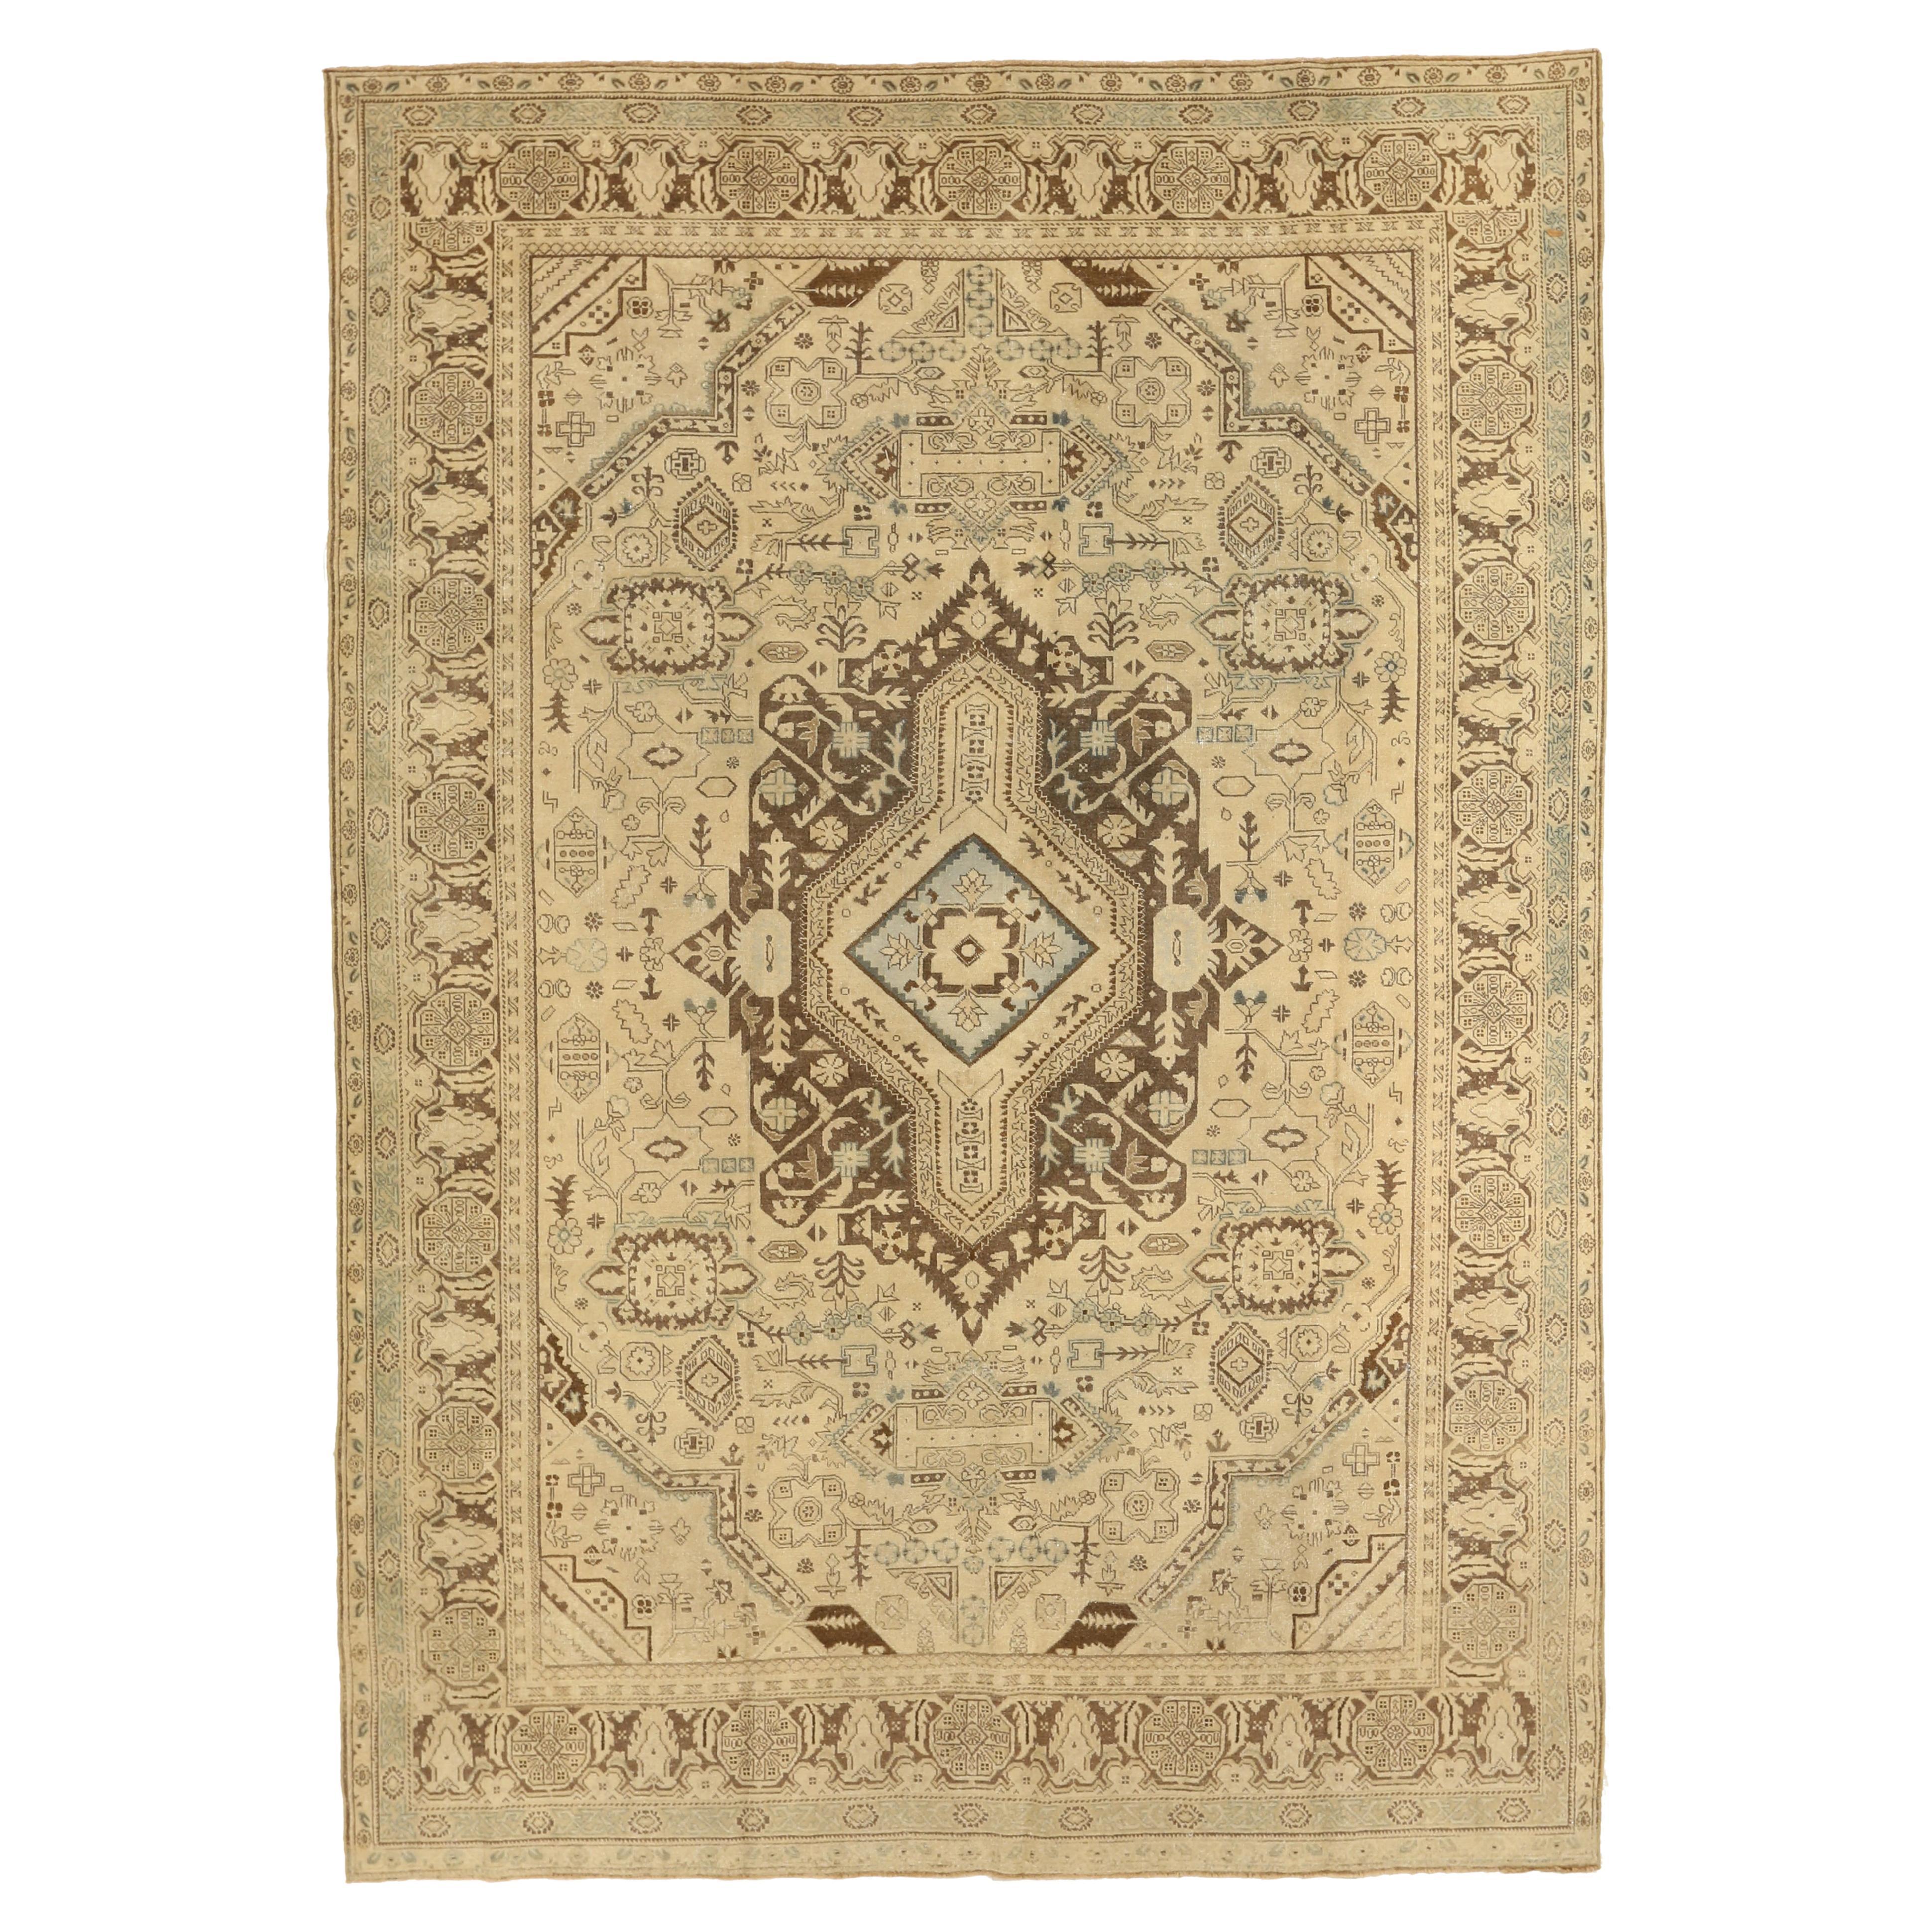 Antiker handgewebter persischer Teppich im Tabriz-Design